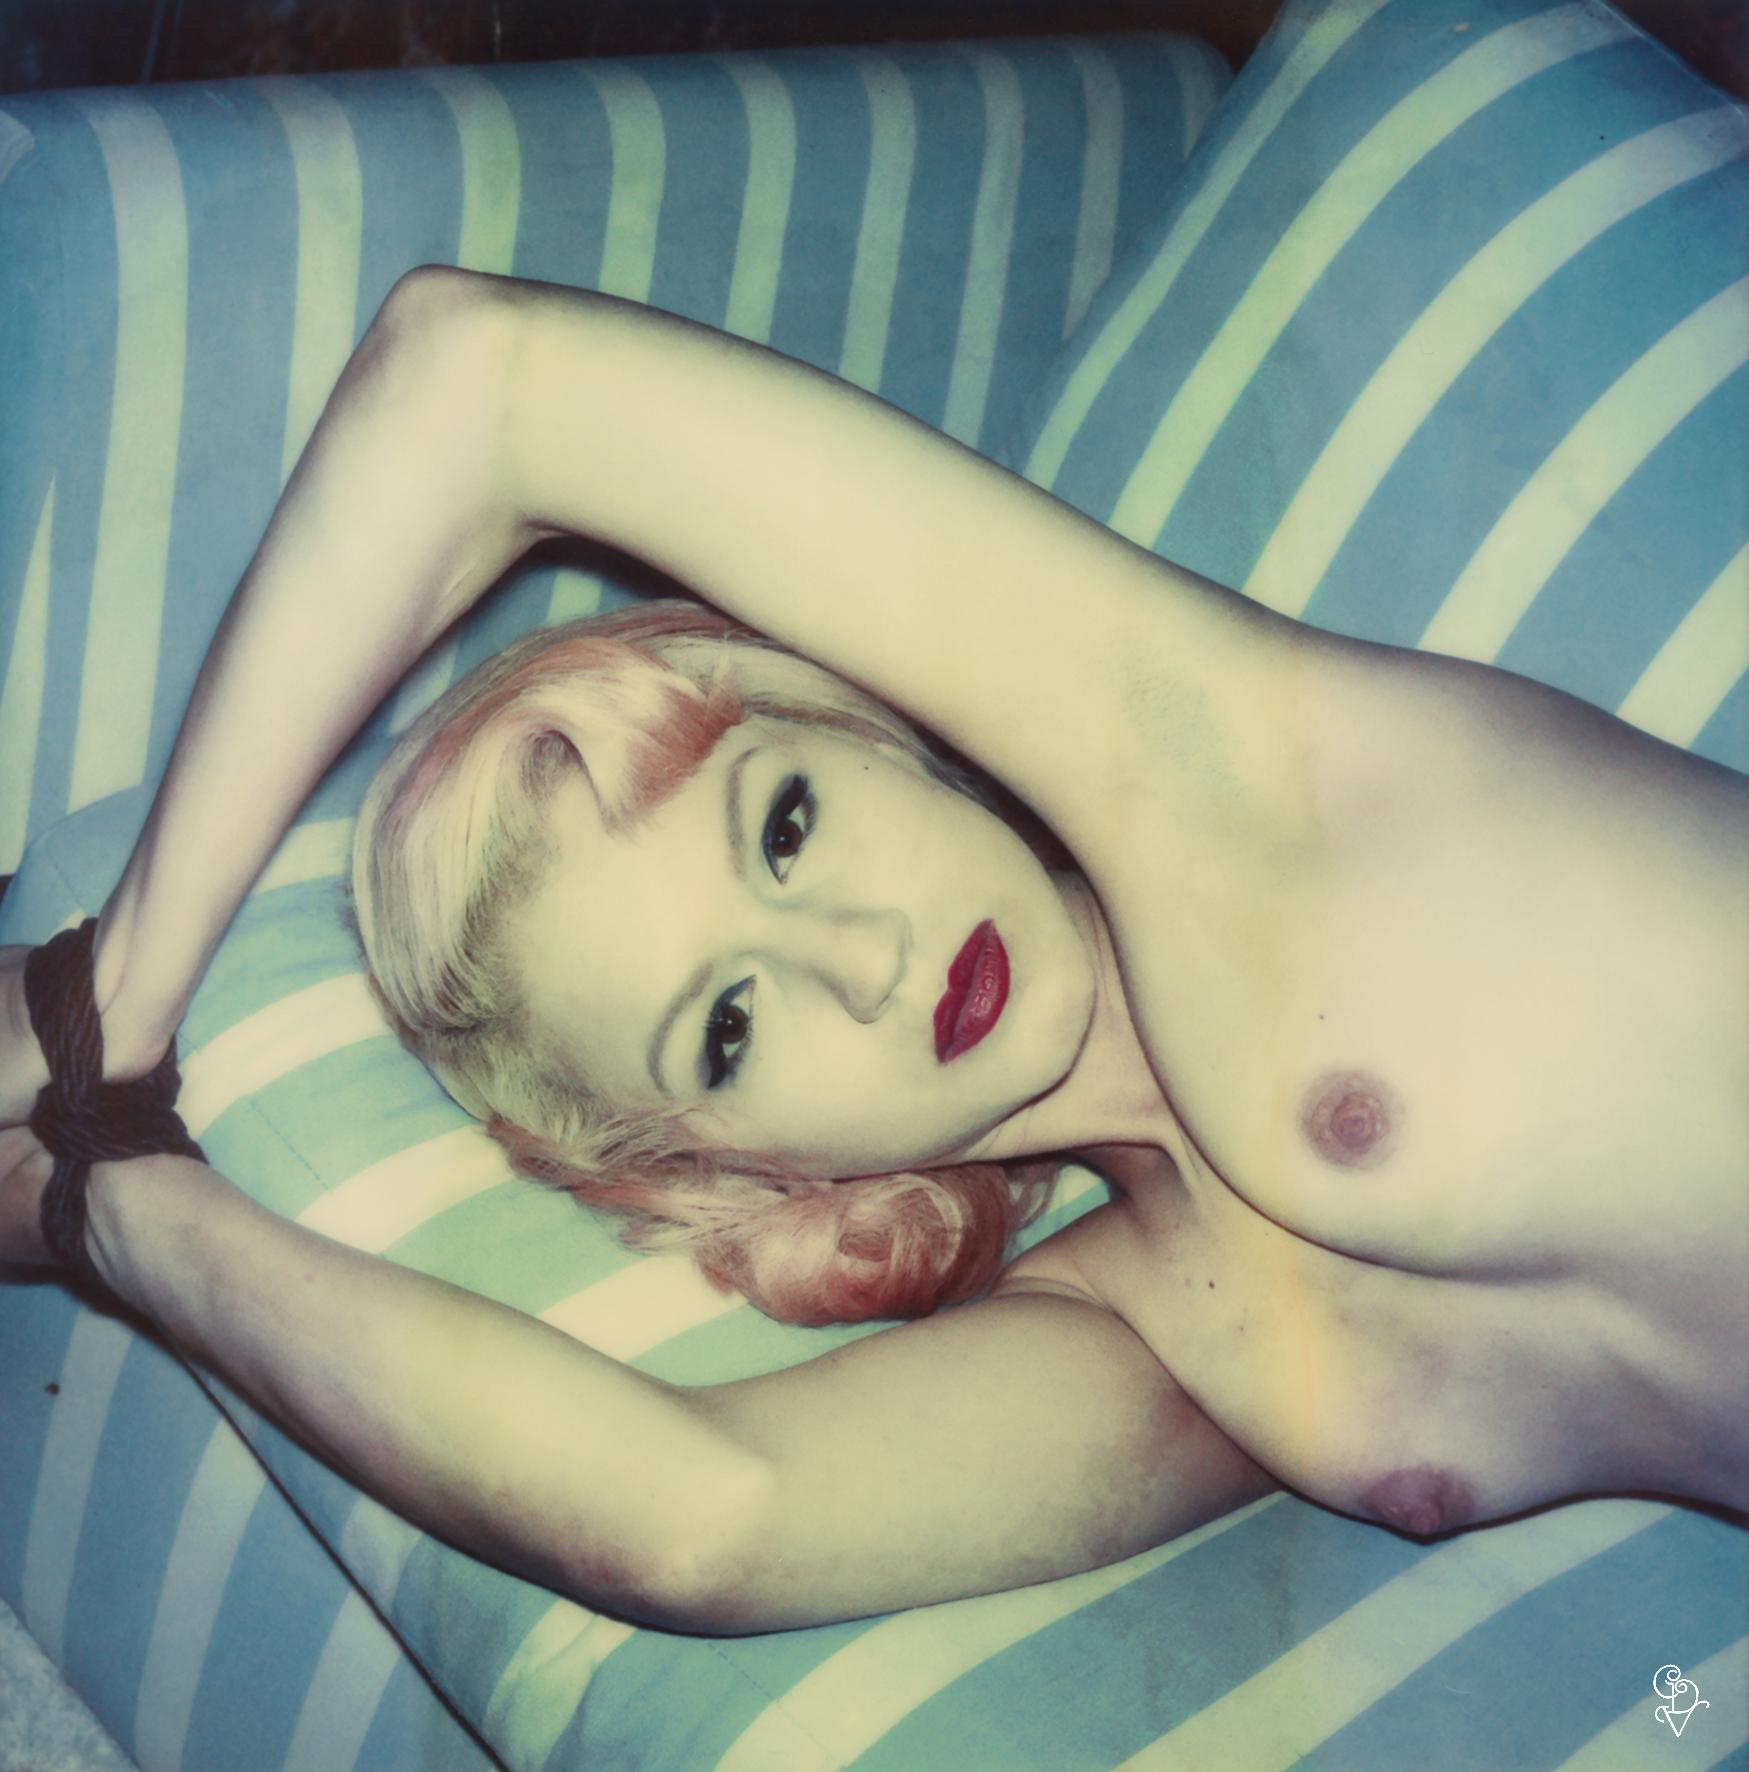 Carmen de Vos Nude Photograph - Miss Eris #11 ( Les Foxy Femmes) - 21st Century, Women, Nude, Polaroid, Contempo